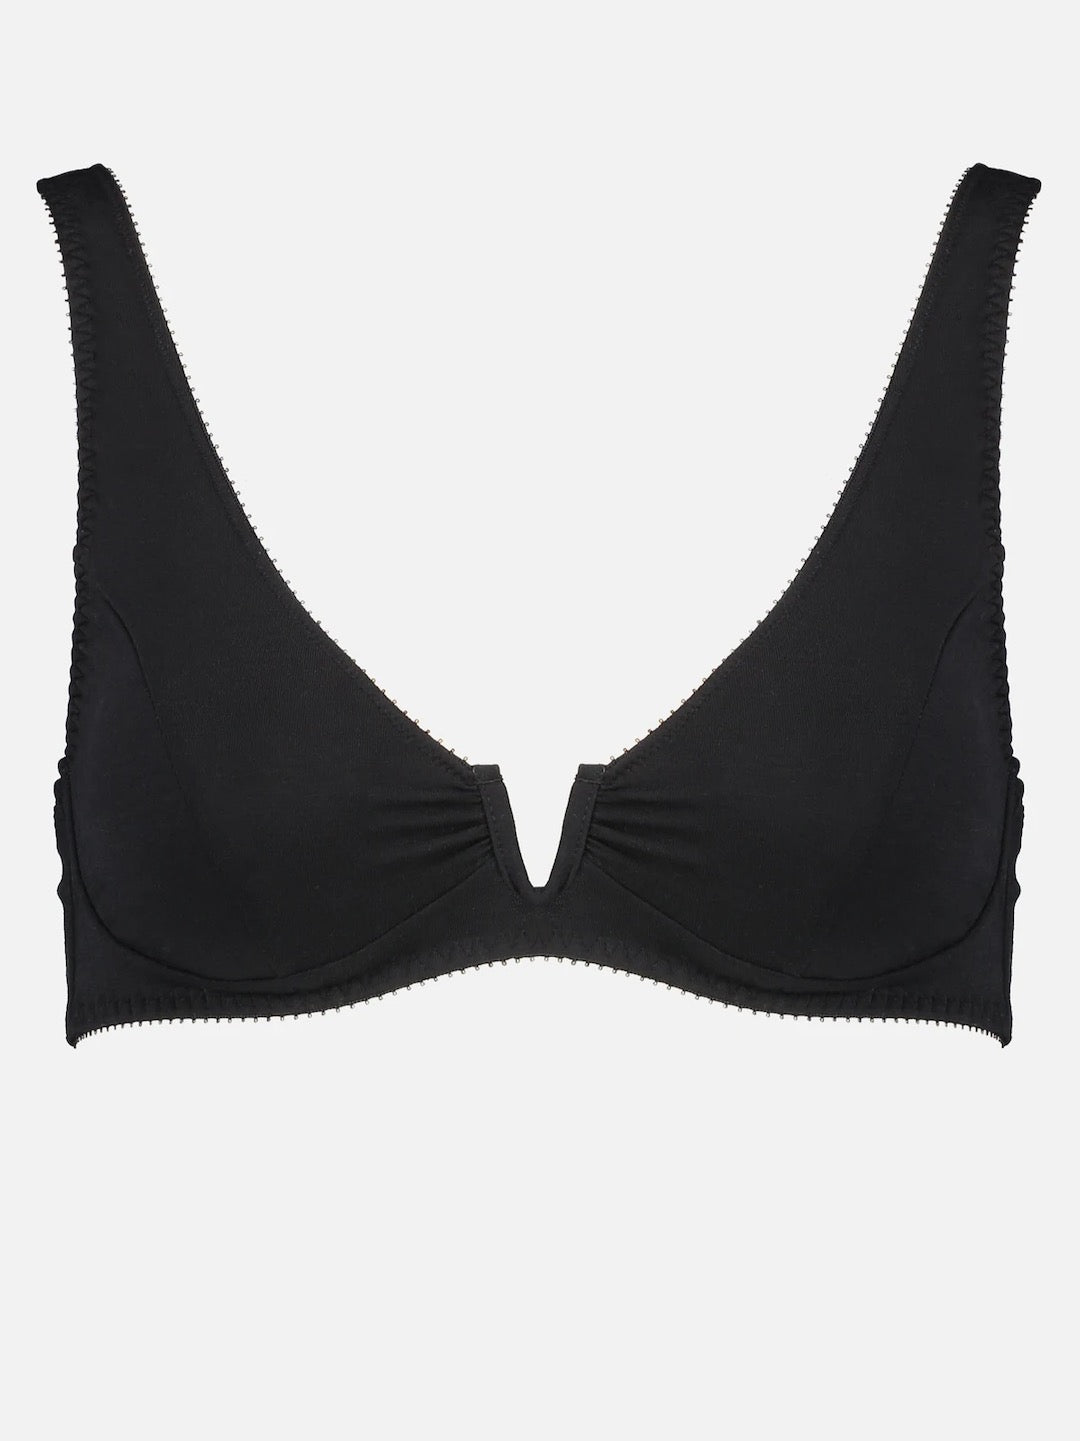 A black bikini top with a v-neckline, called the Sarah Bra - Shield by Videris.